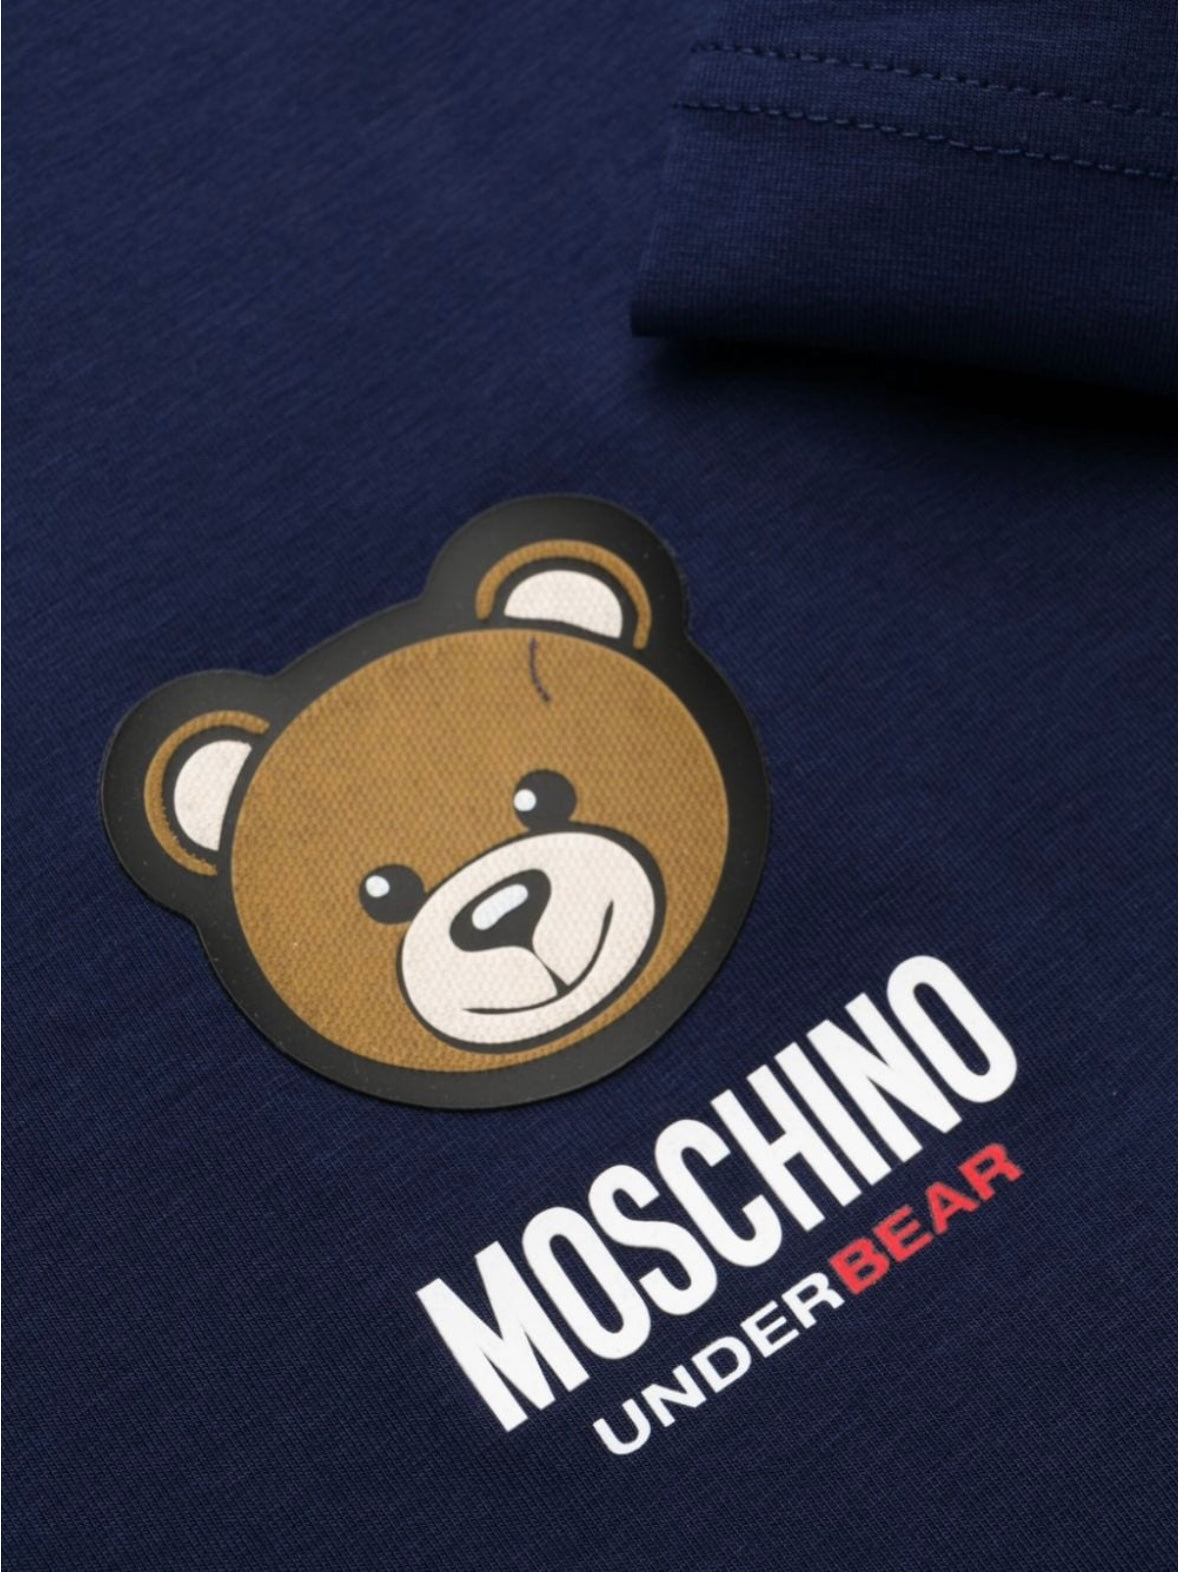 MOSCHINO UNDERWEAR - T-Shirt patch logo